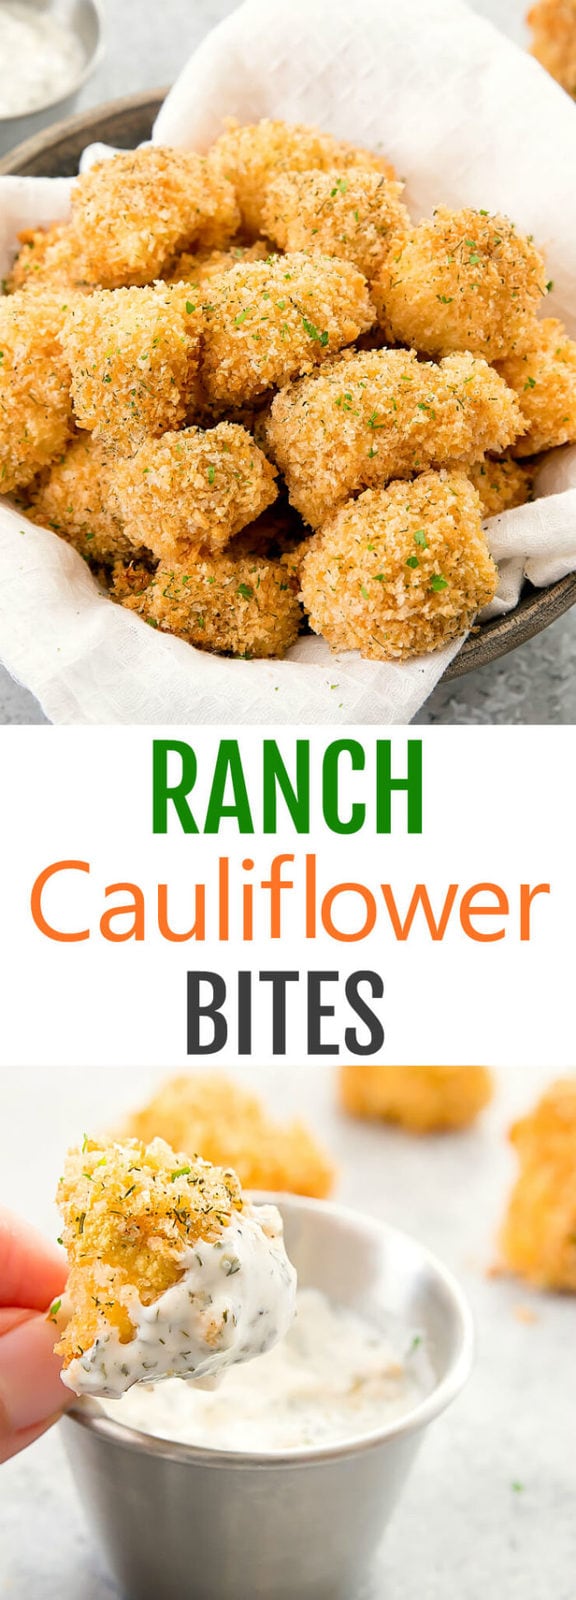 Ranch Cauliflower Bites